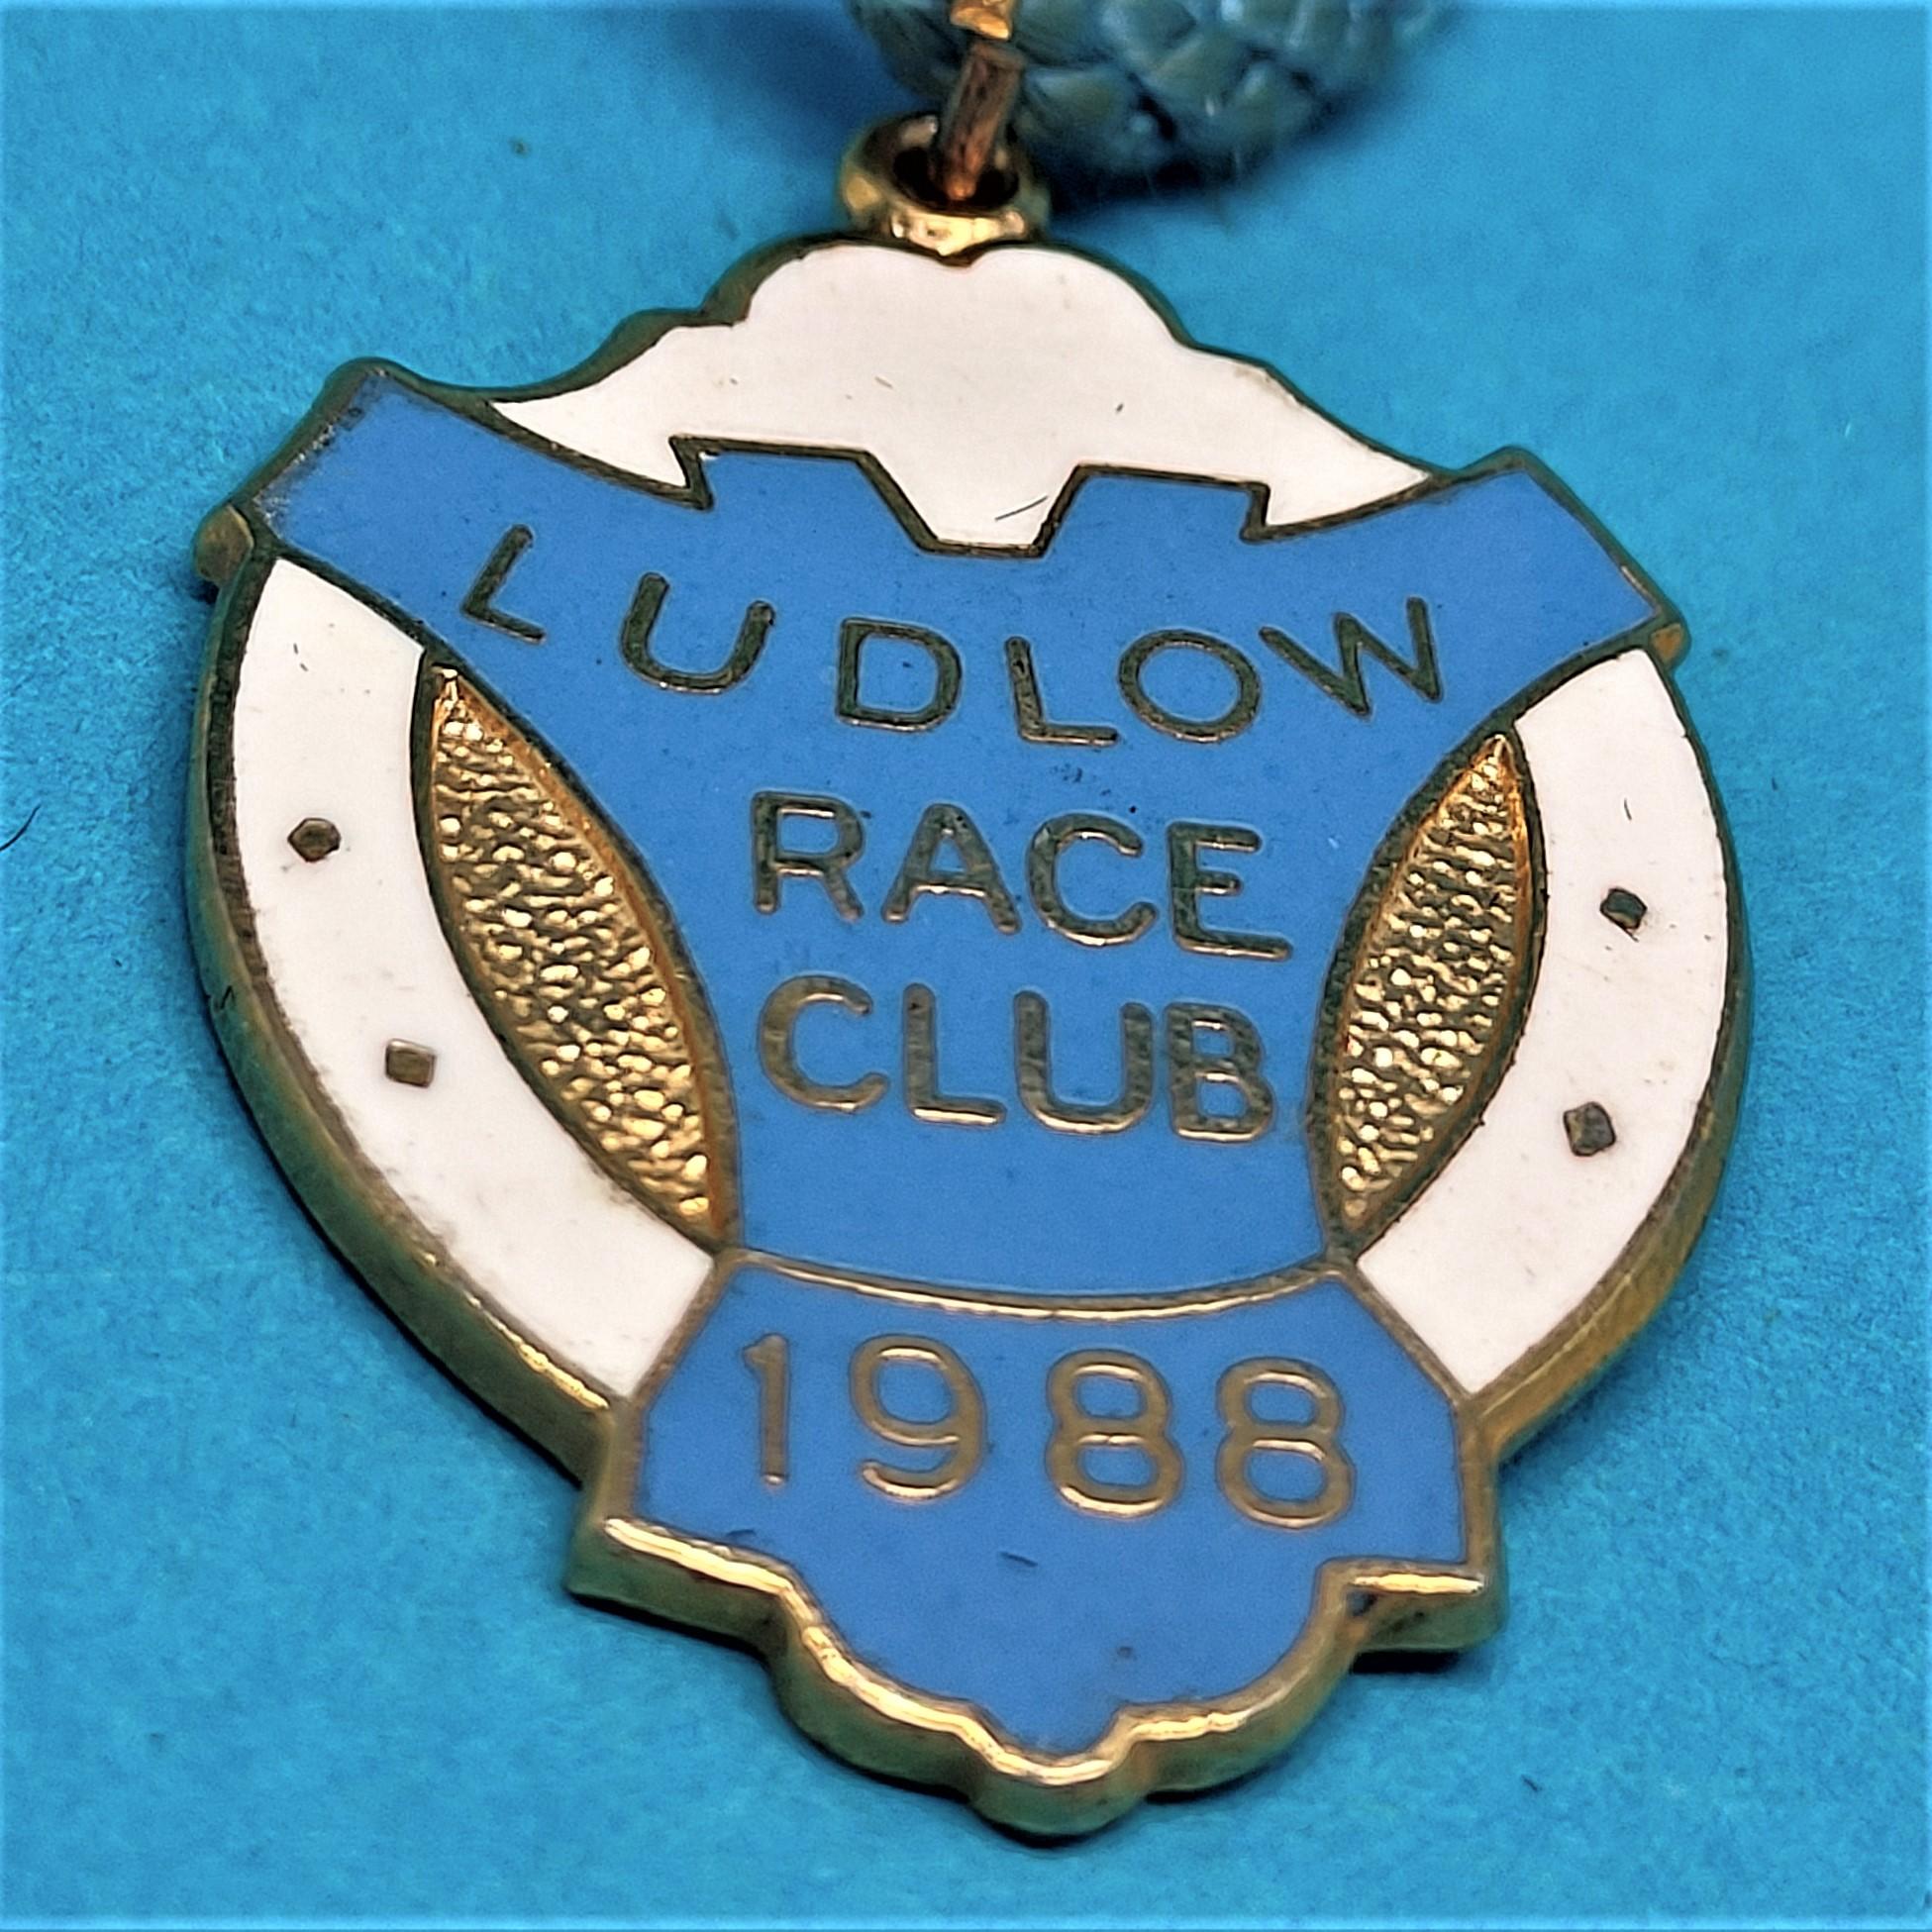 Ludlow 1988